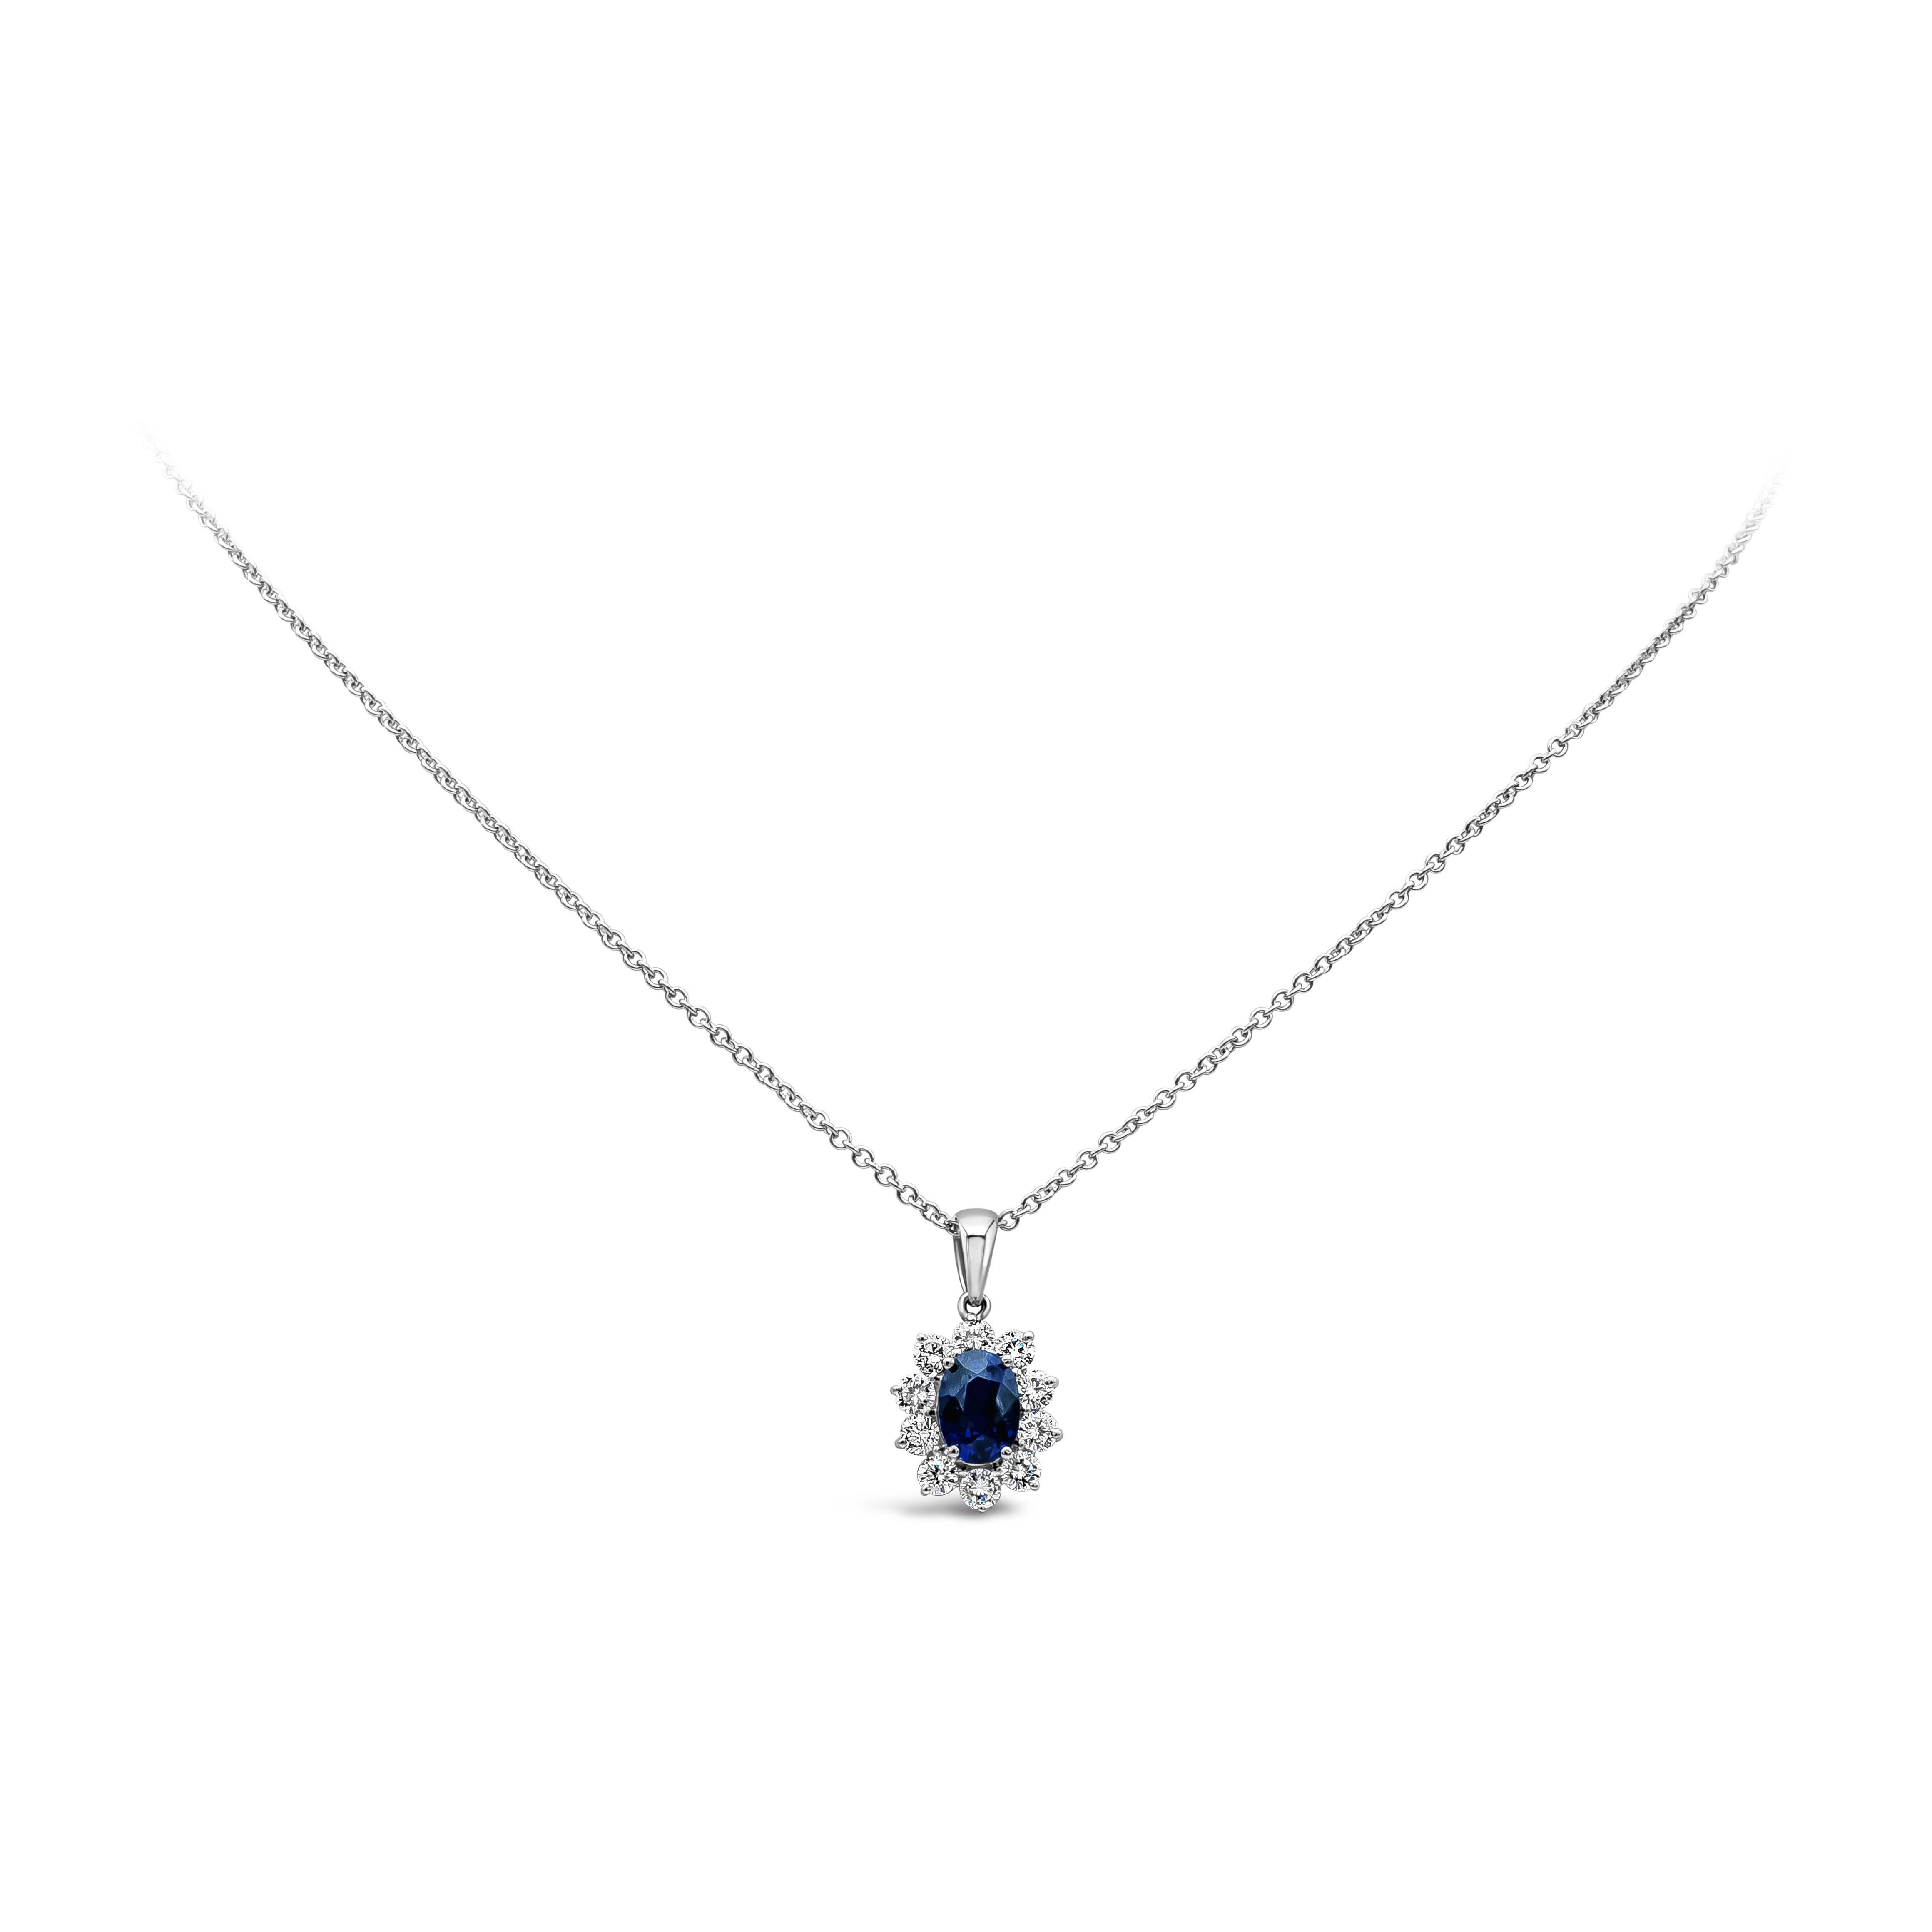 Un magnifique collier pendentif mettant en valeur un saphir bleu de forme ovale de 1,90 carat, entouré de 10 diamants ronds de taille brillant pesant 0,88 carat au total, de couleur F-G, de pureté VS/SI, et serti dans de l'or blanc 18k.

Style